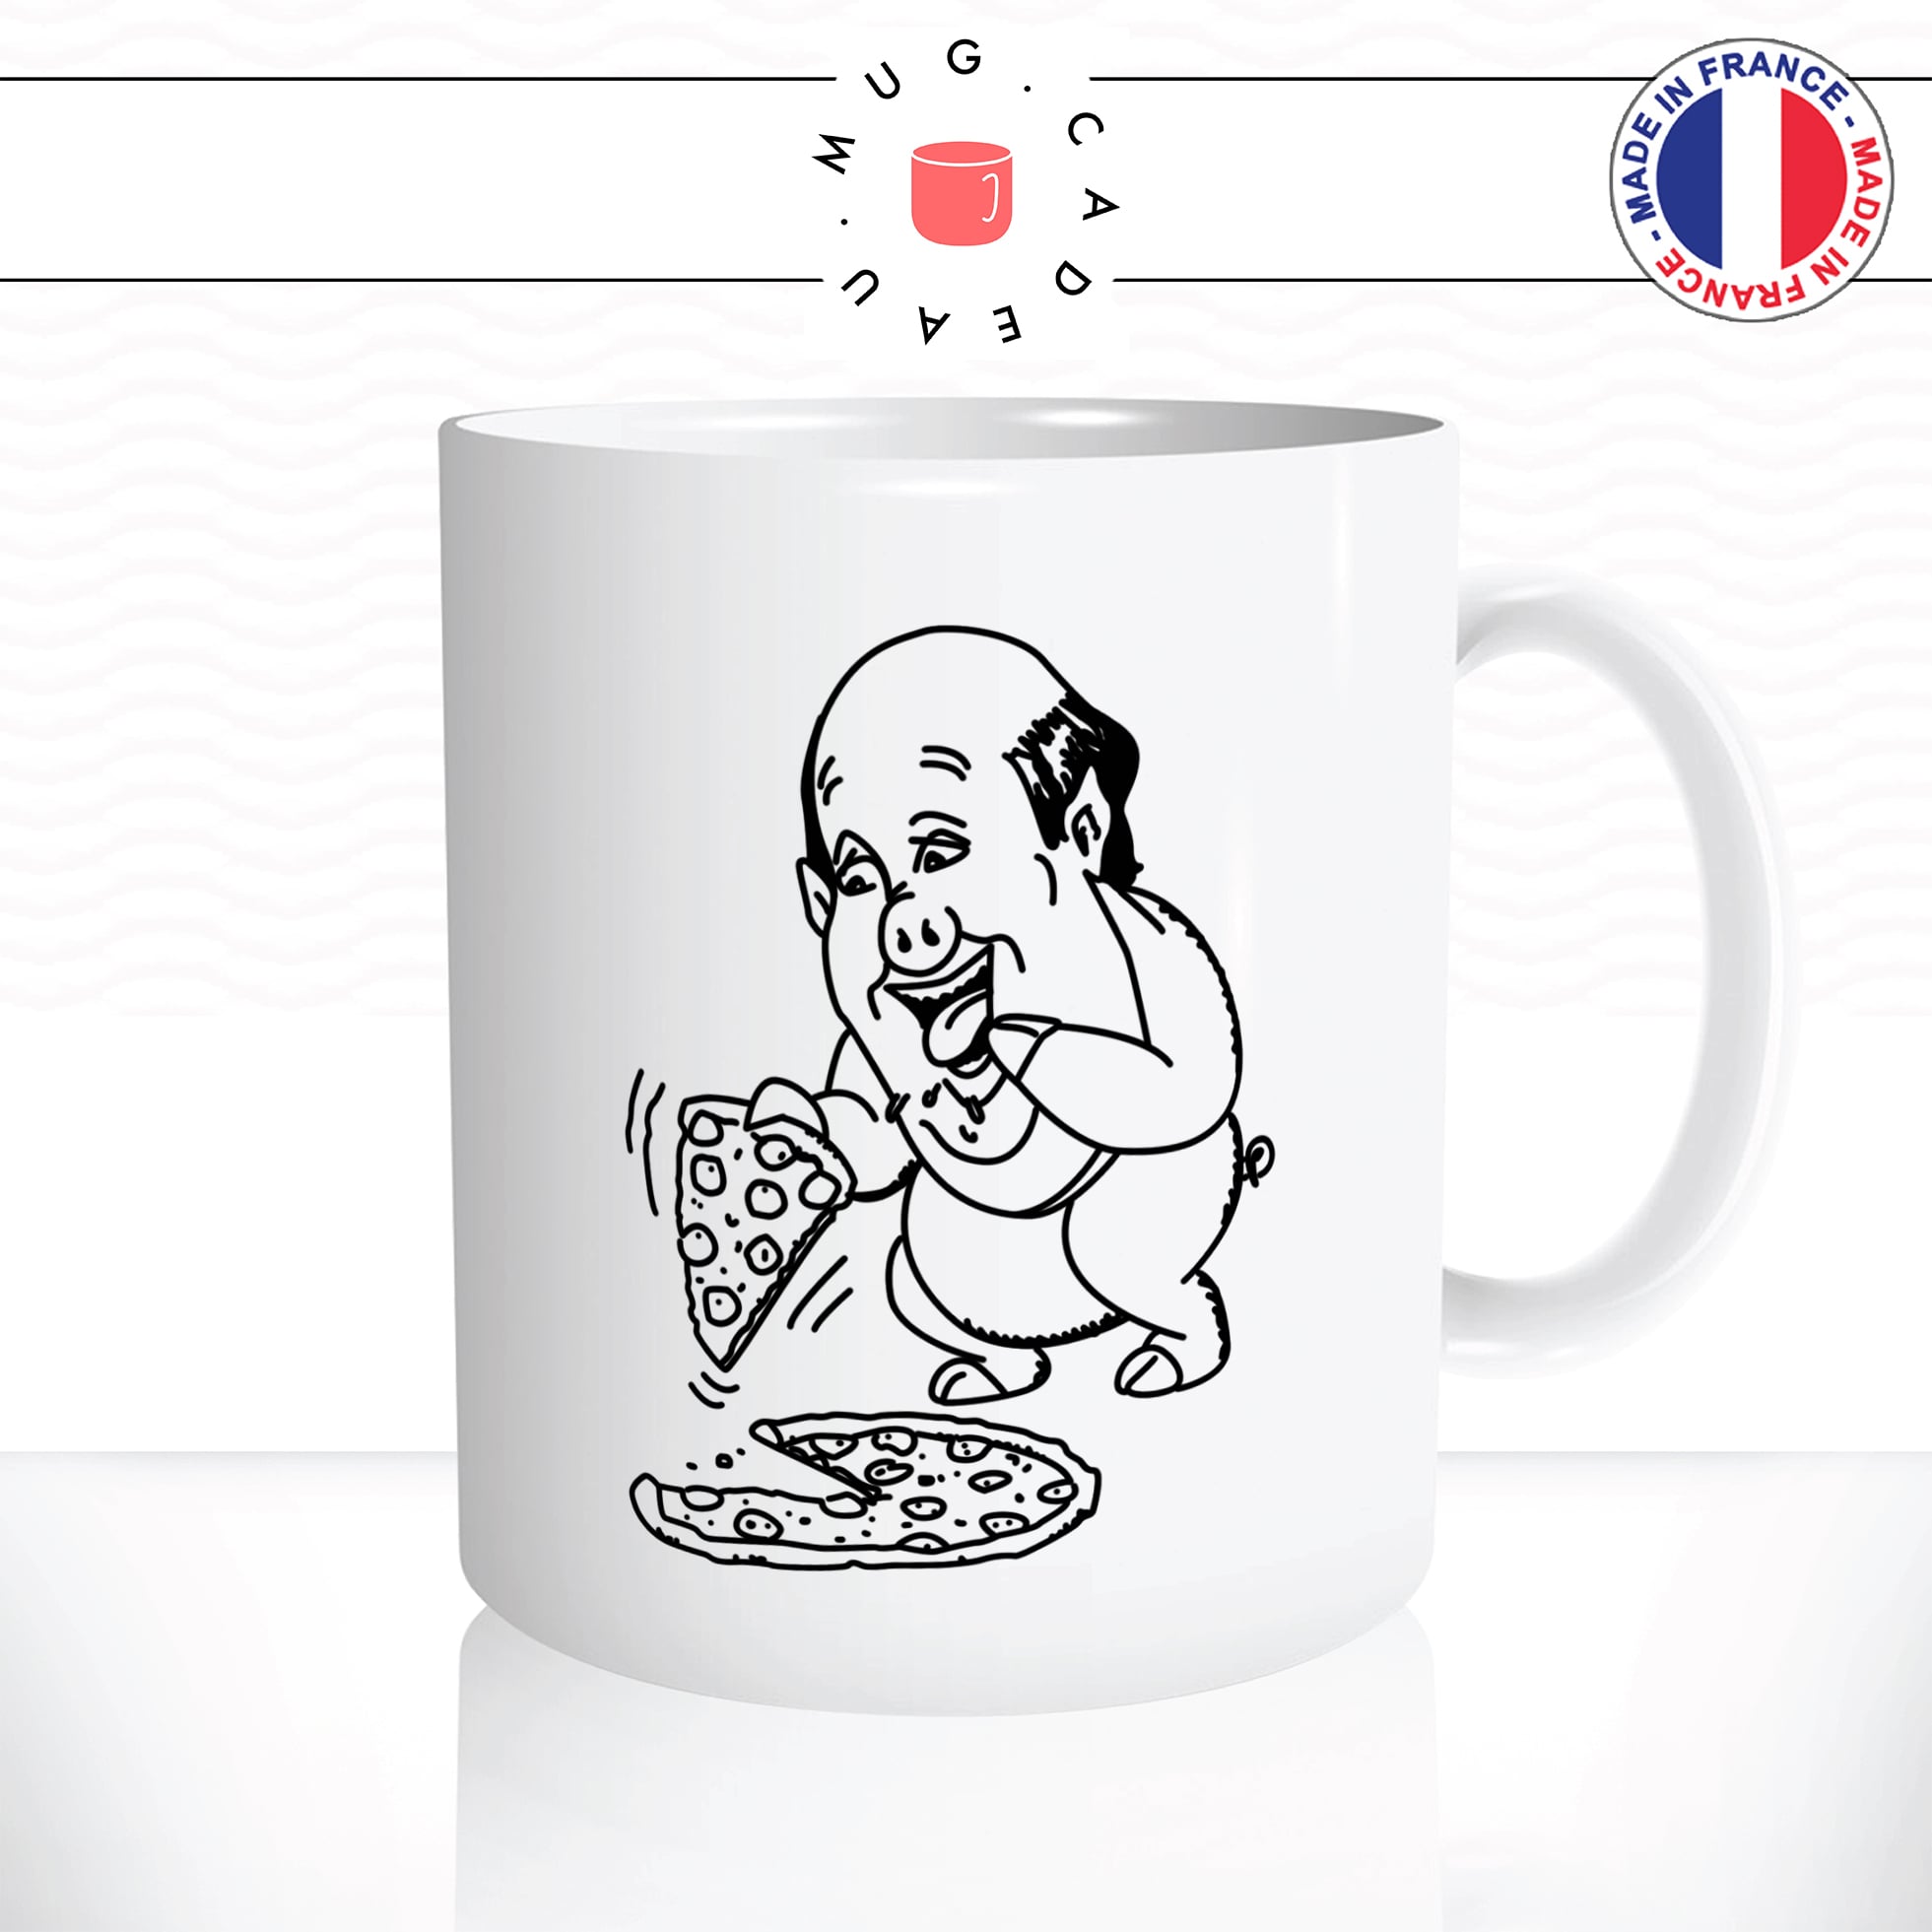 mug-tasse-kevin-pizza-dessin-cochon-the-office-serie-humour-café-thé-idée-cadeau-original-personnalisable2-min